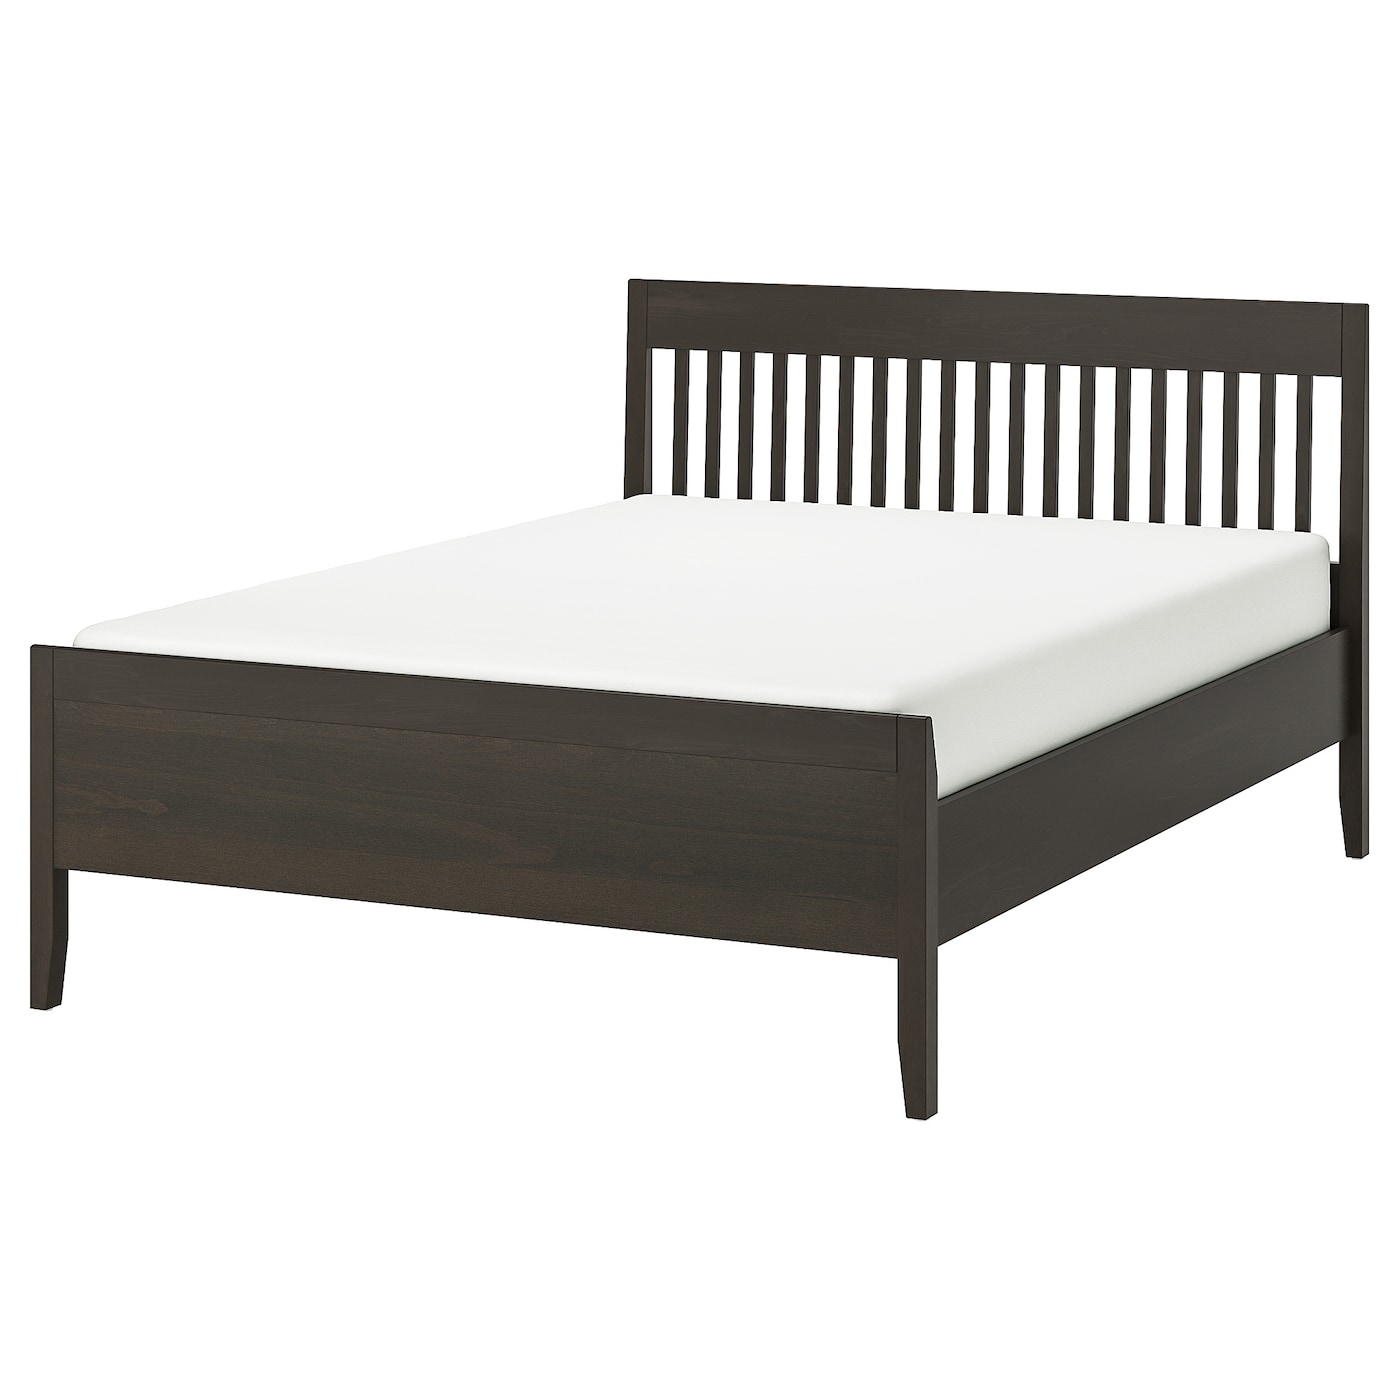 Каркас кровати - IKEA IDANÄS/IDANAS, 200х160 см, темно-коричневый, ИДАНЭС ИКЕА